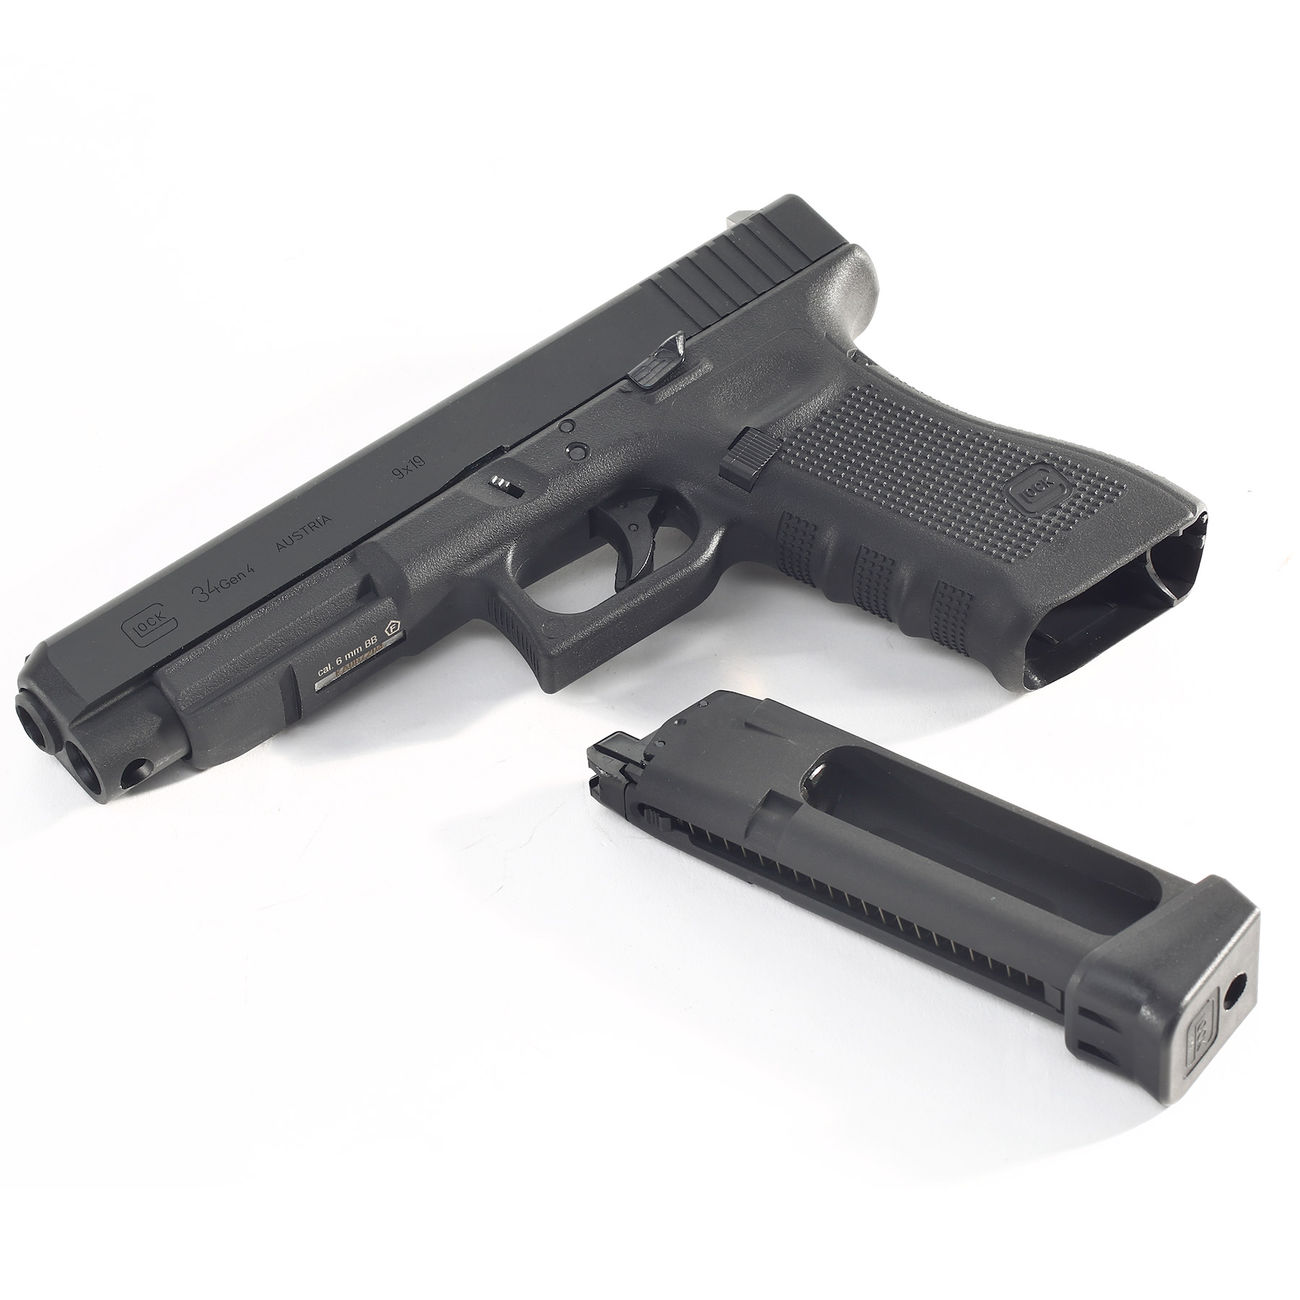 VFC Glock 34 Gen. 4 mit CNC-Metallschlitten GBB 6mm BB schwarz - Deluxe-Edition Bild 3